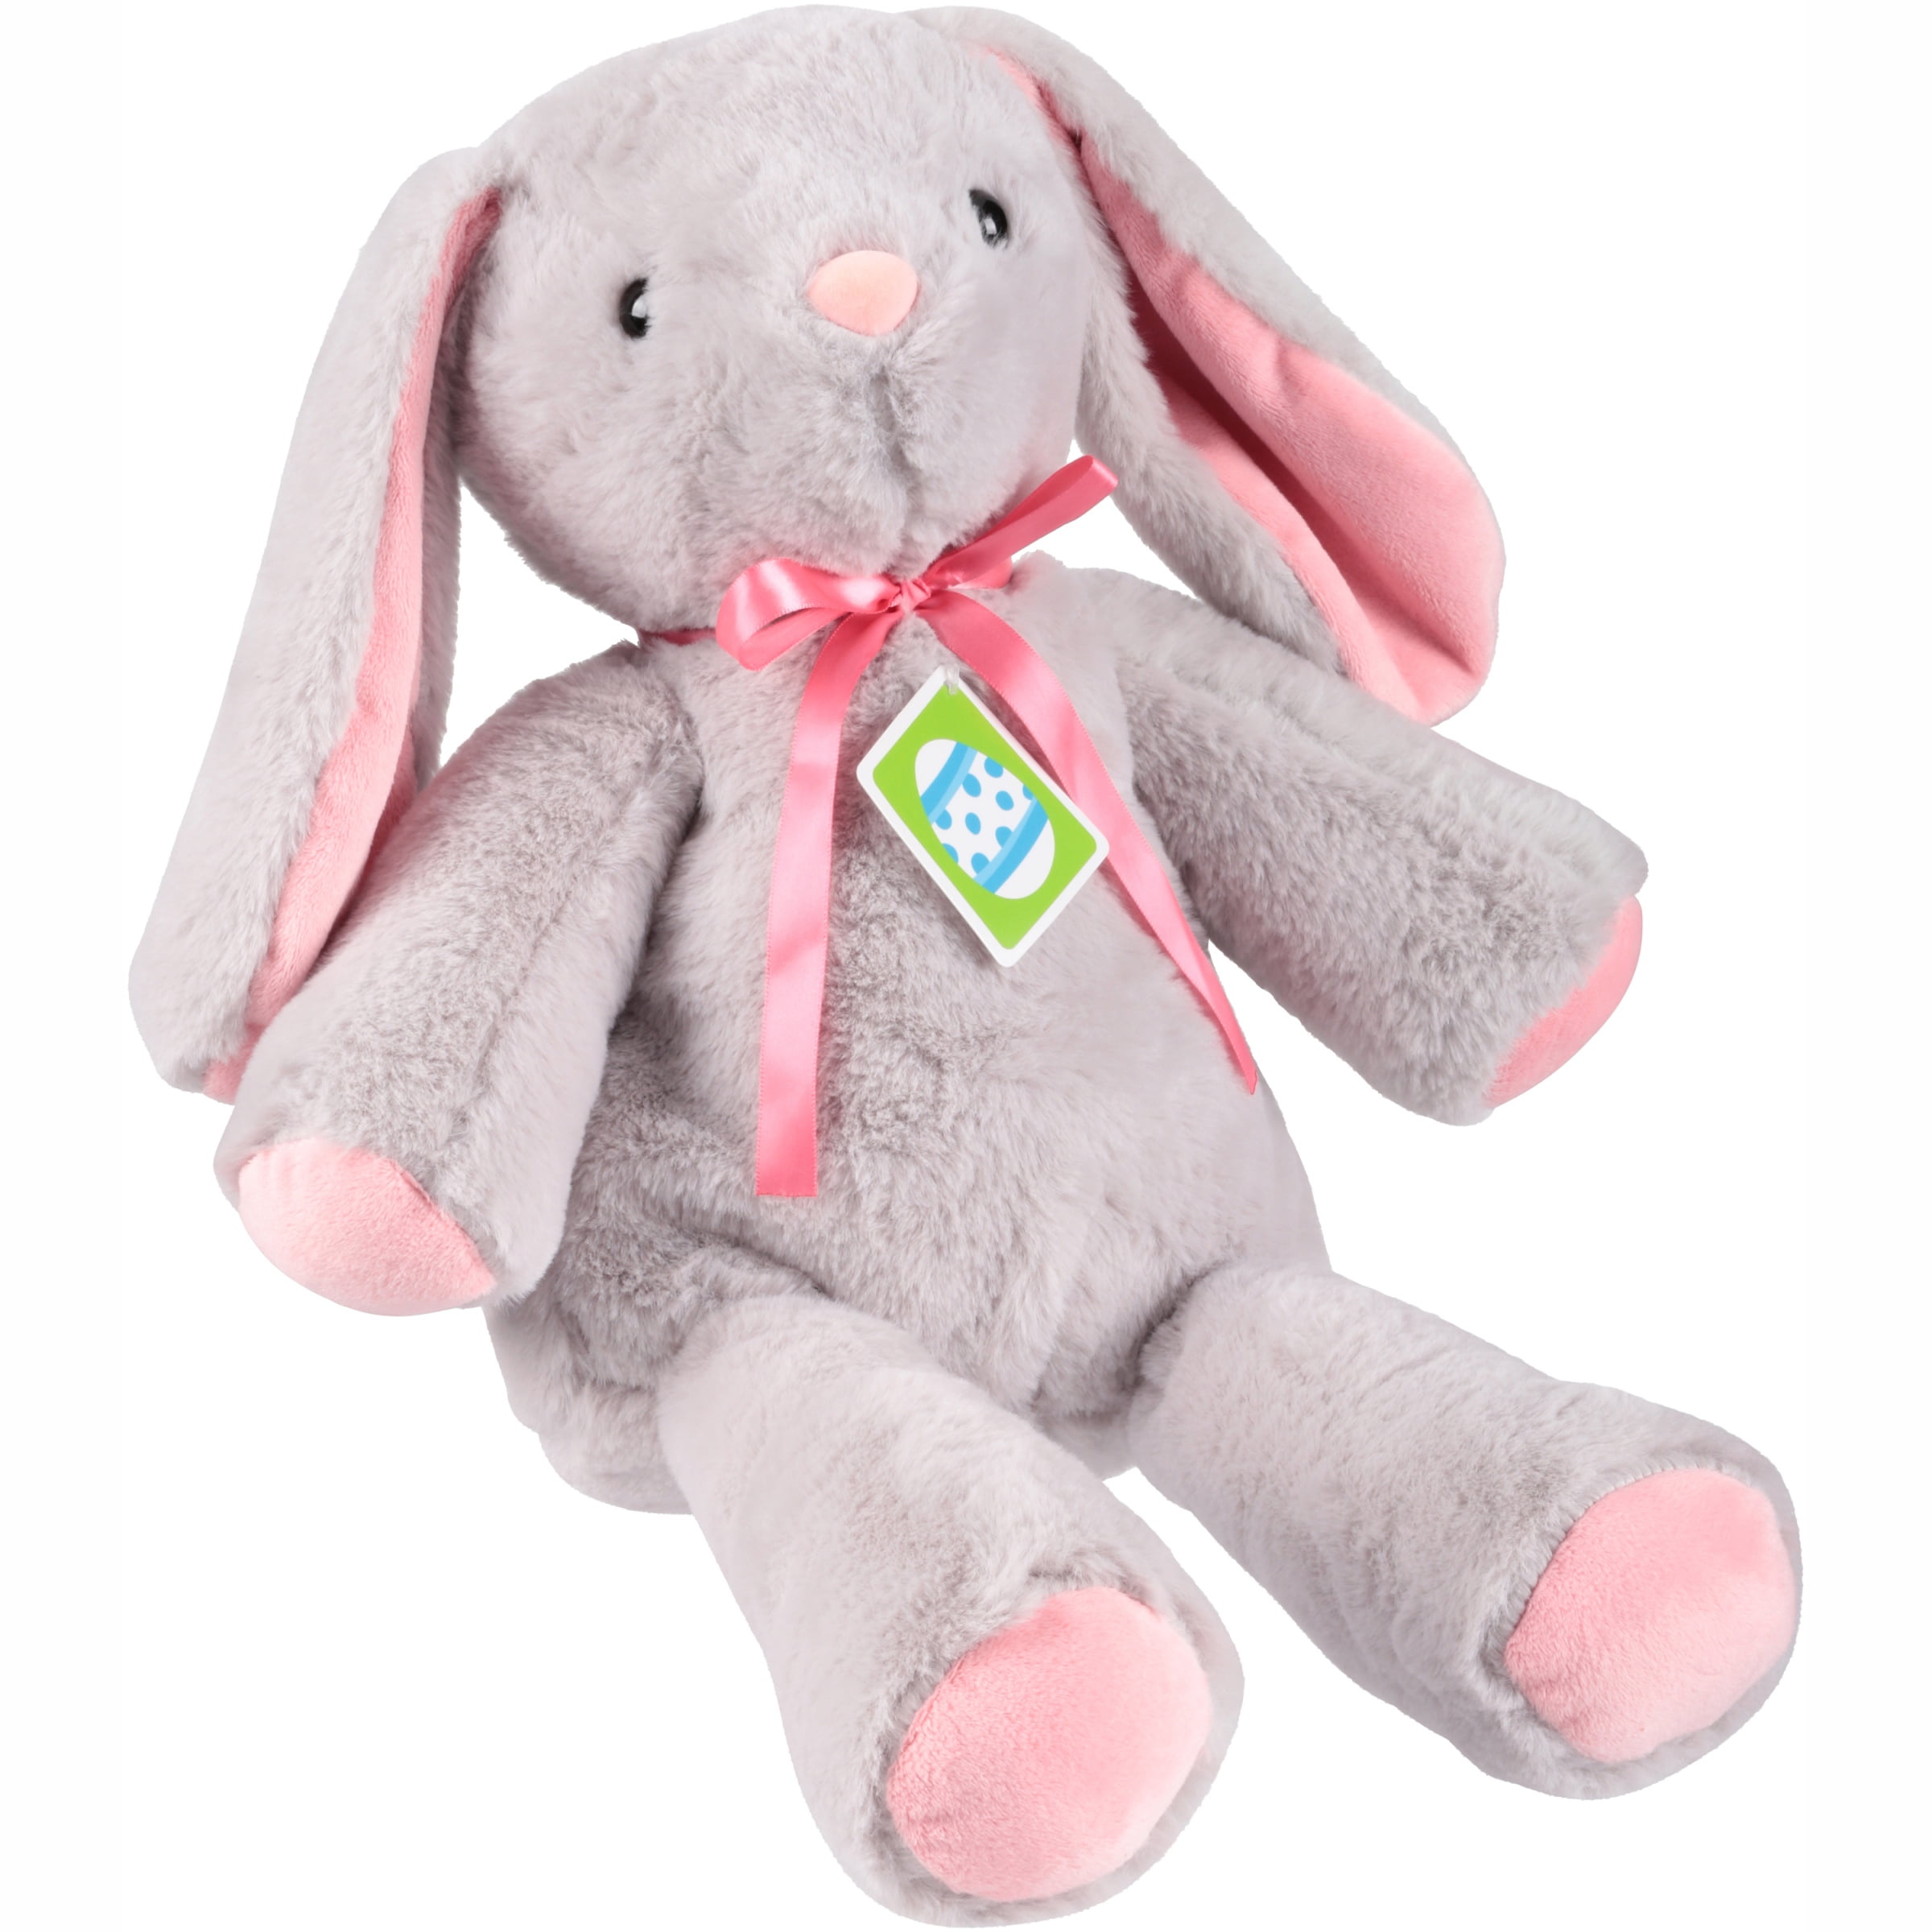 dandee collectors choice bunny